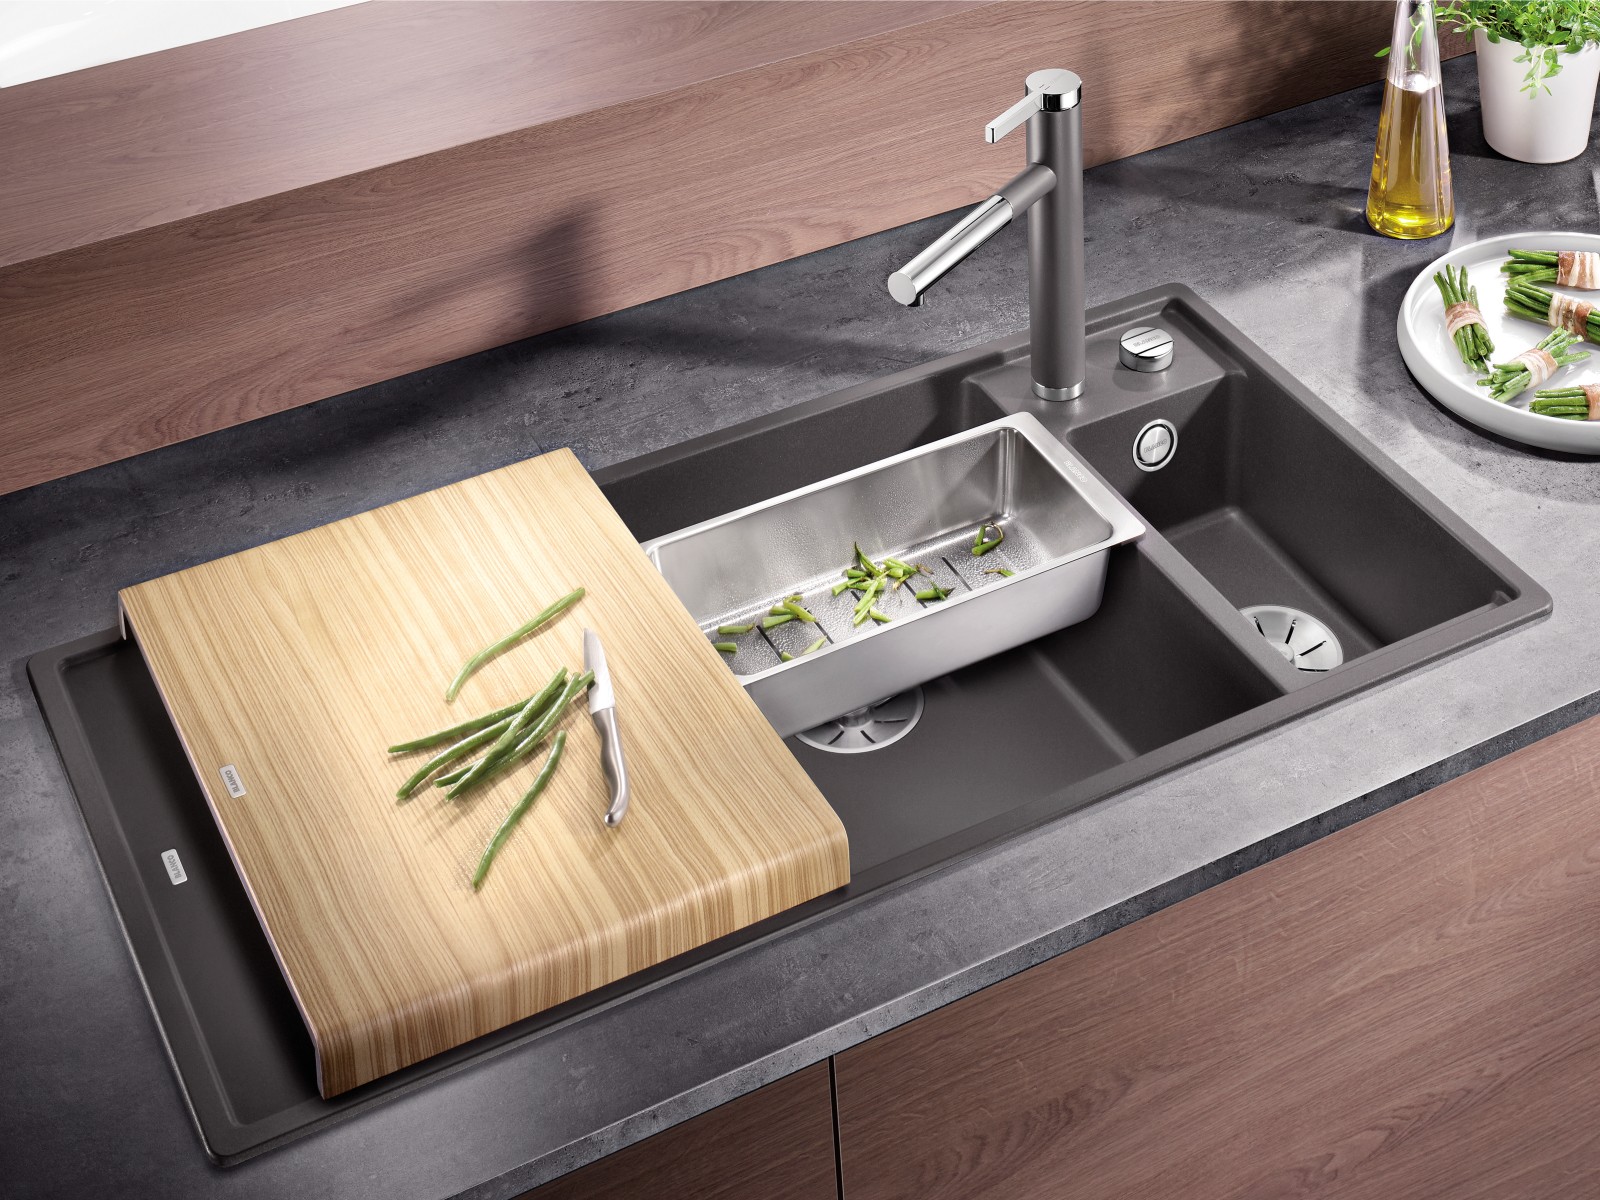 kitchen sink accessories for bathroom sink